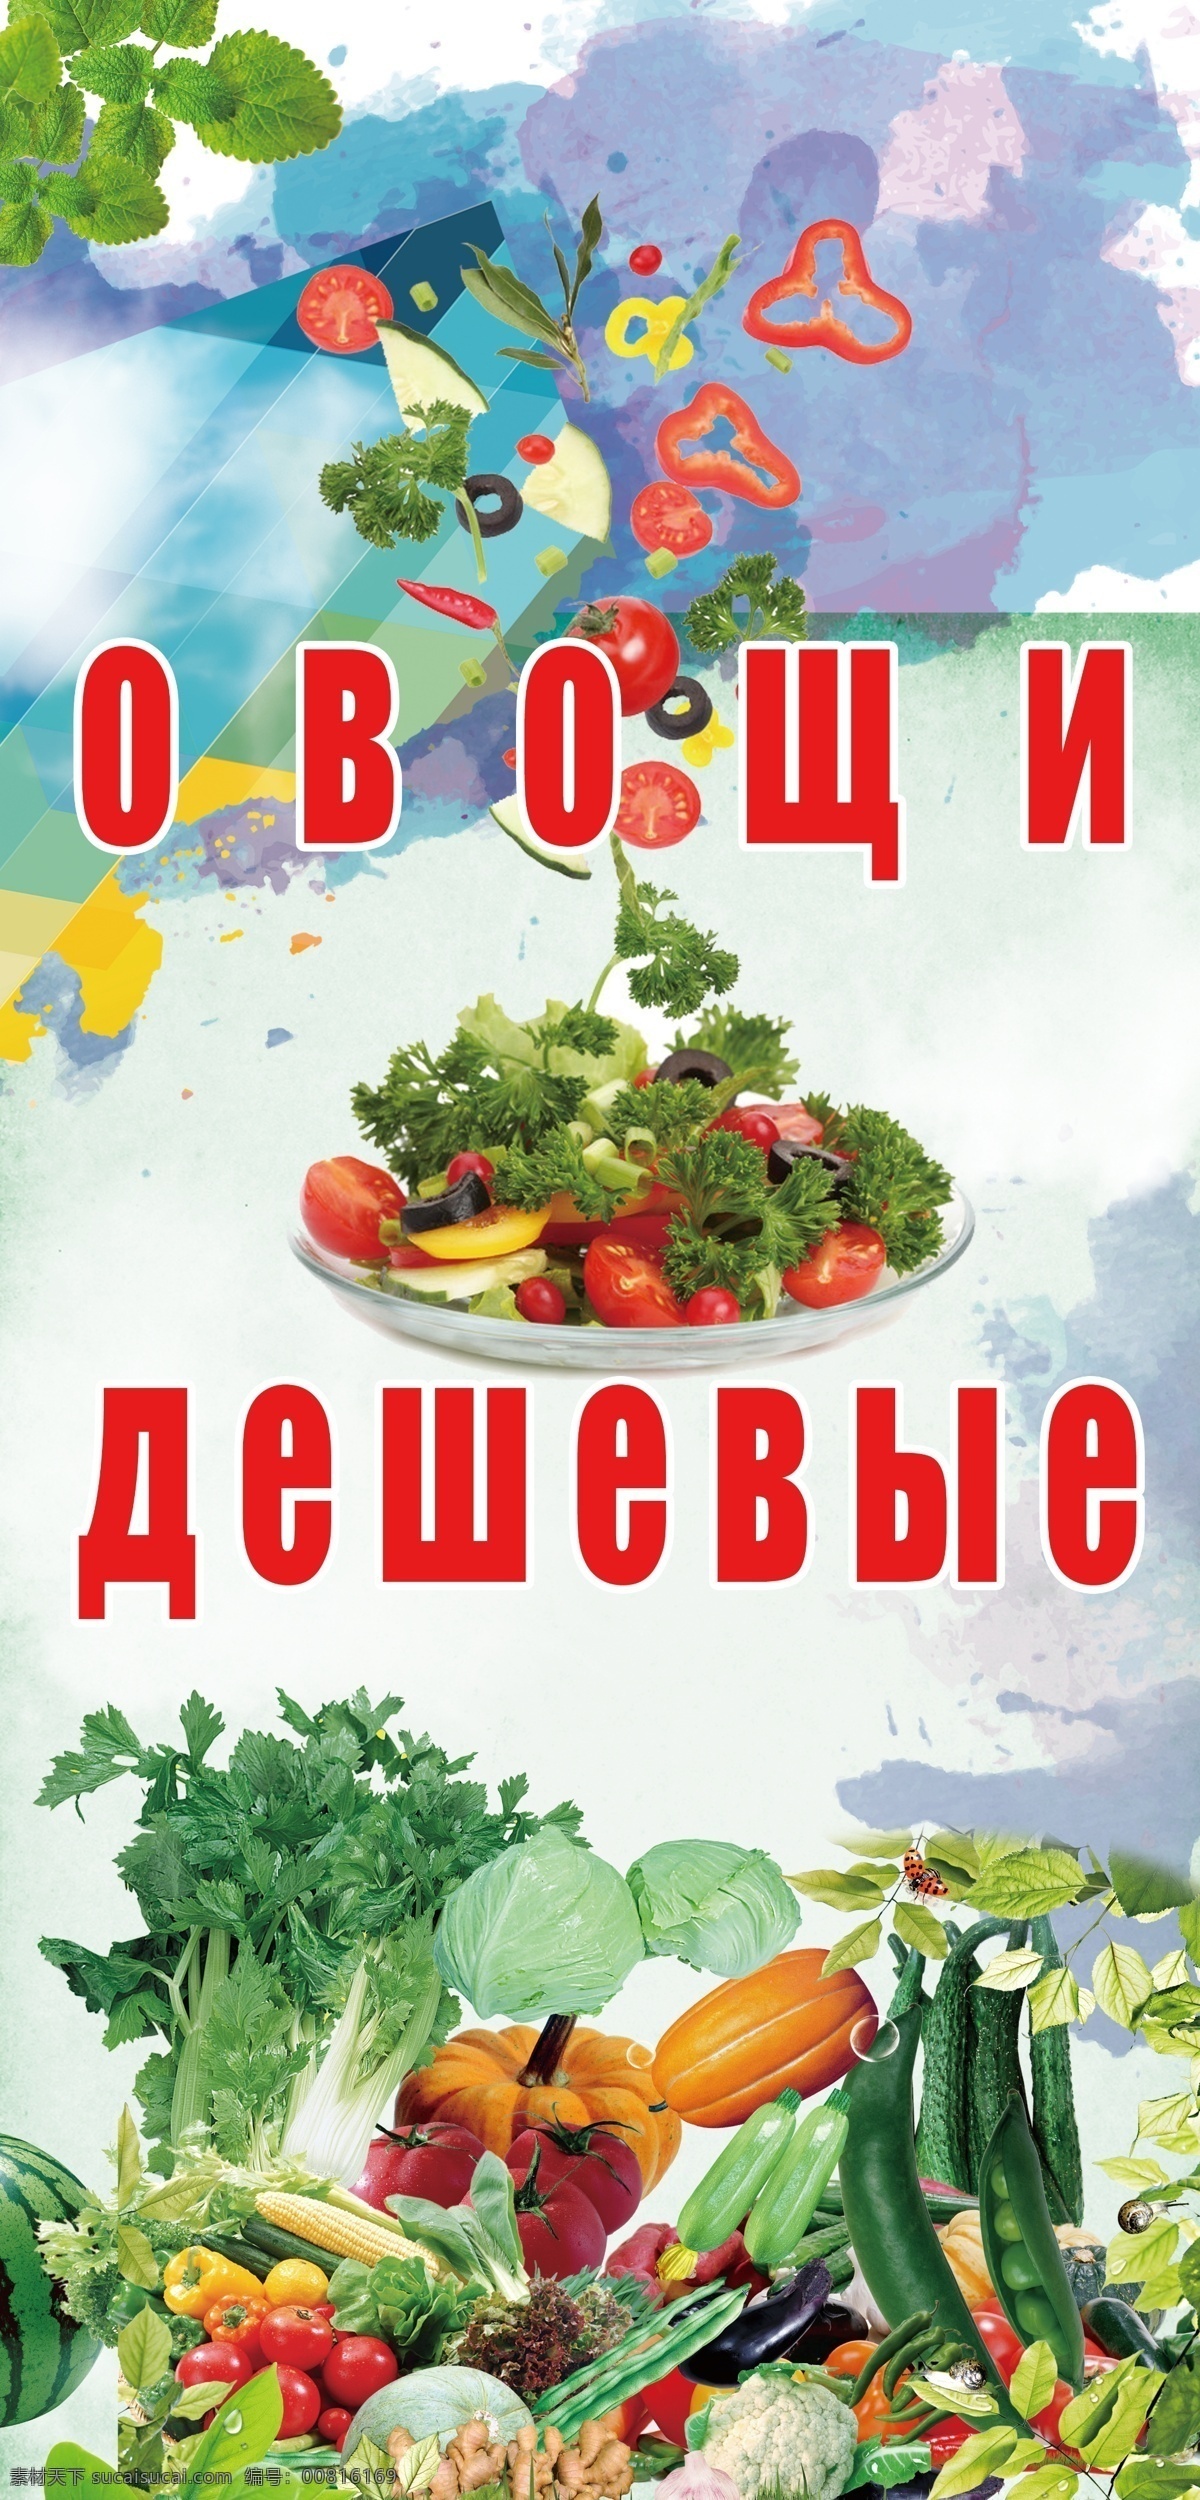 俄文 蔬菜 招牌 牌匾 外国 招牌蔬菜 超市宣传 海报 国外广告设计